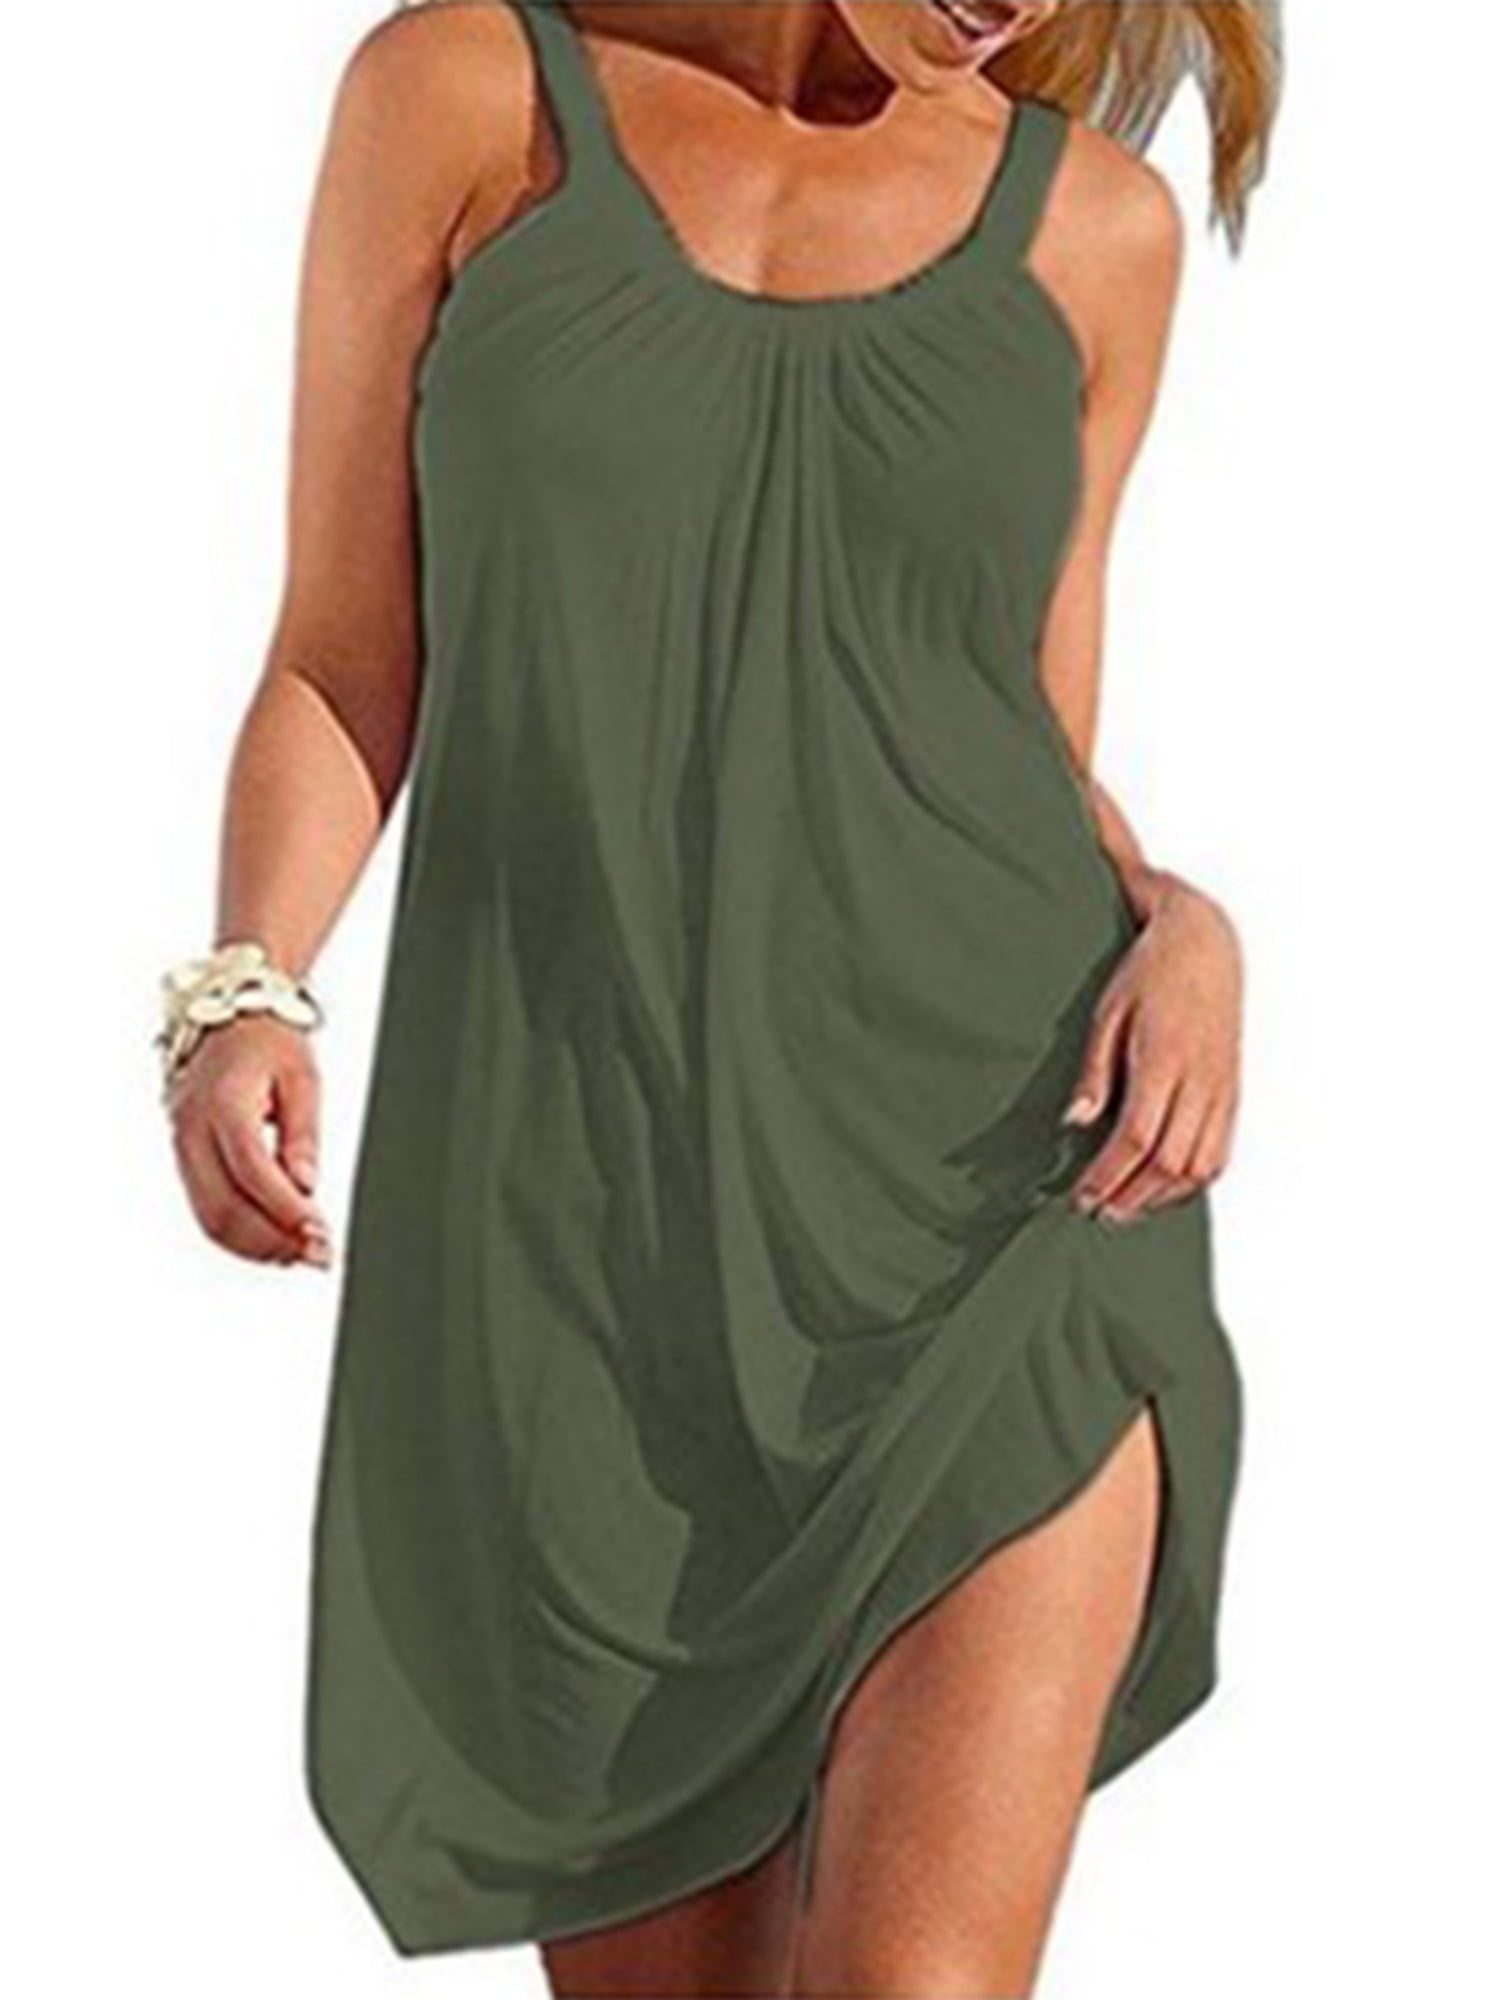 FANVOOK Sleeveless Dress Womens Tank Sundress Tir Dye Blue Green Colorful Dress Causal Summer Sundress TB XXL